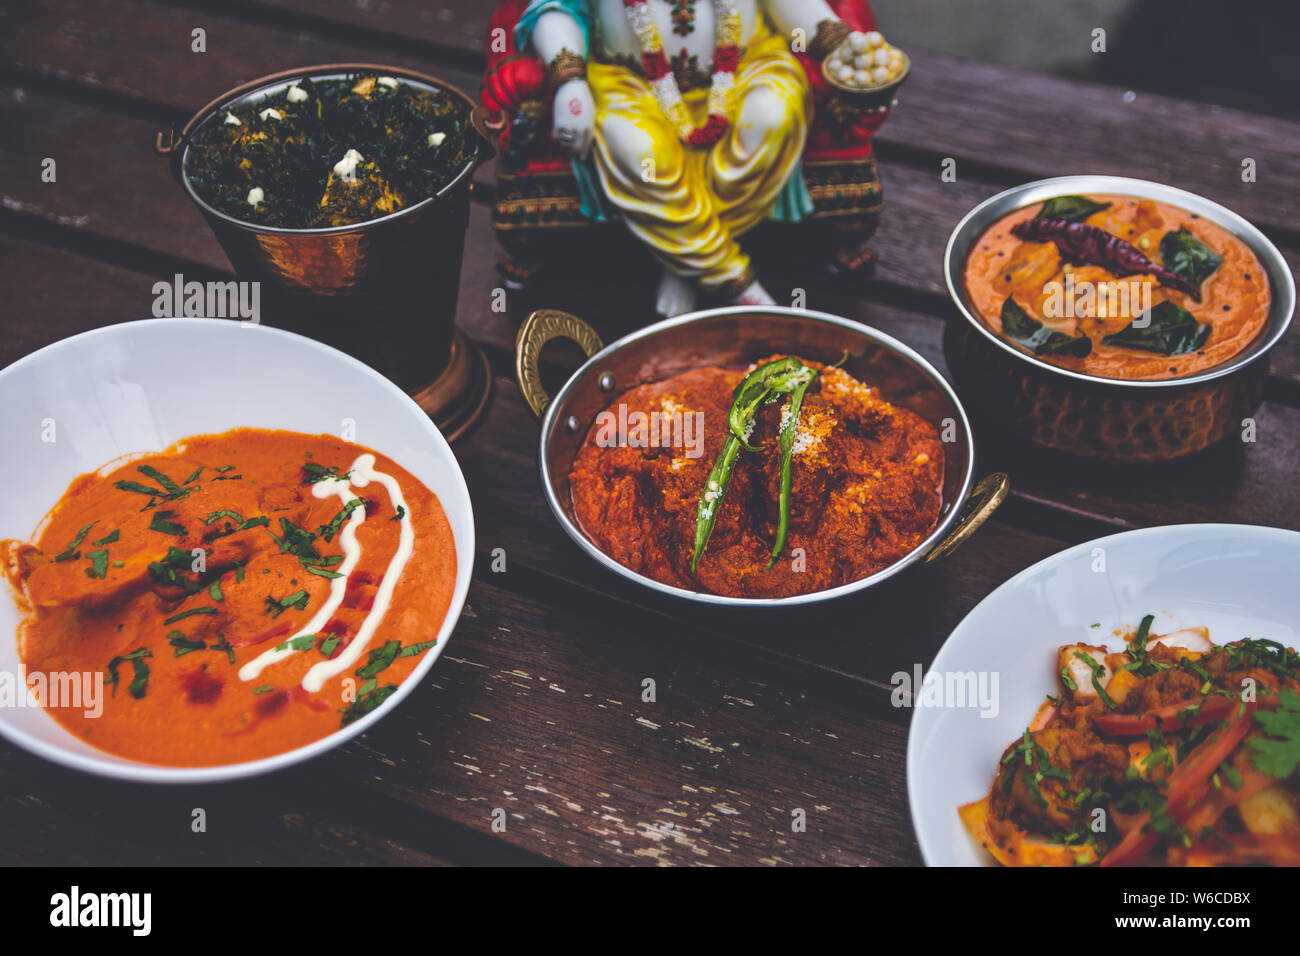 D'authentiques plats indiens au moment de servir. Banque D'Images